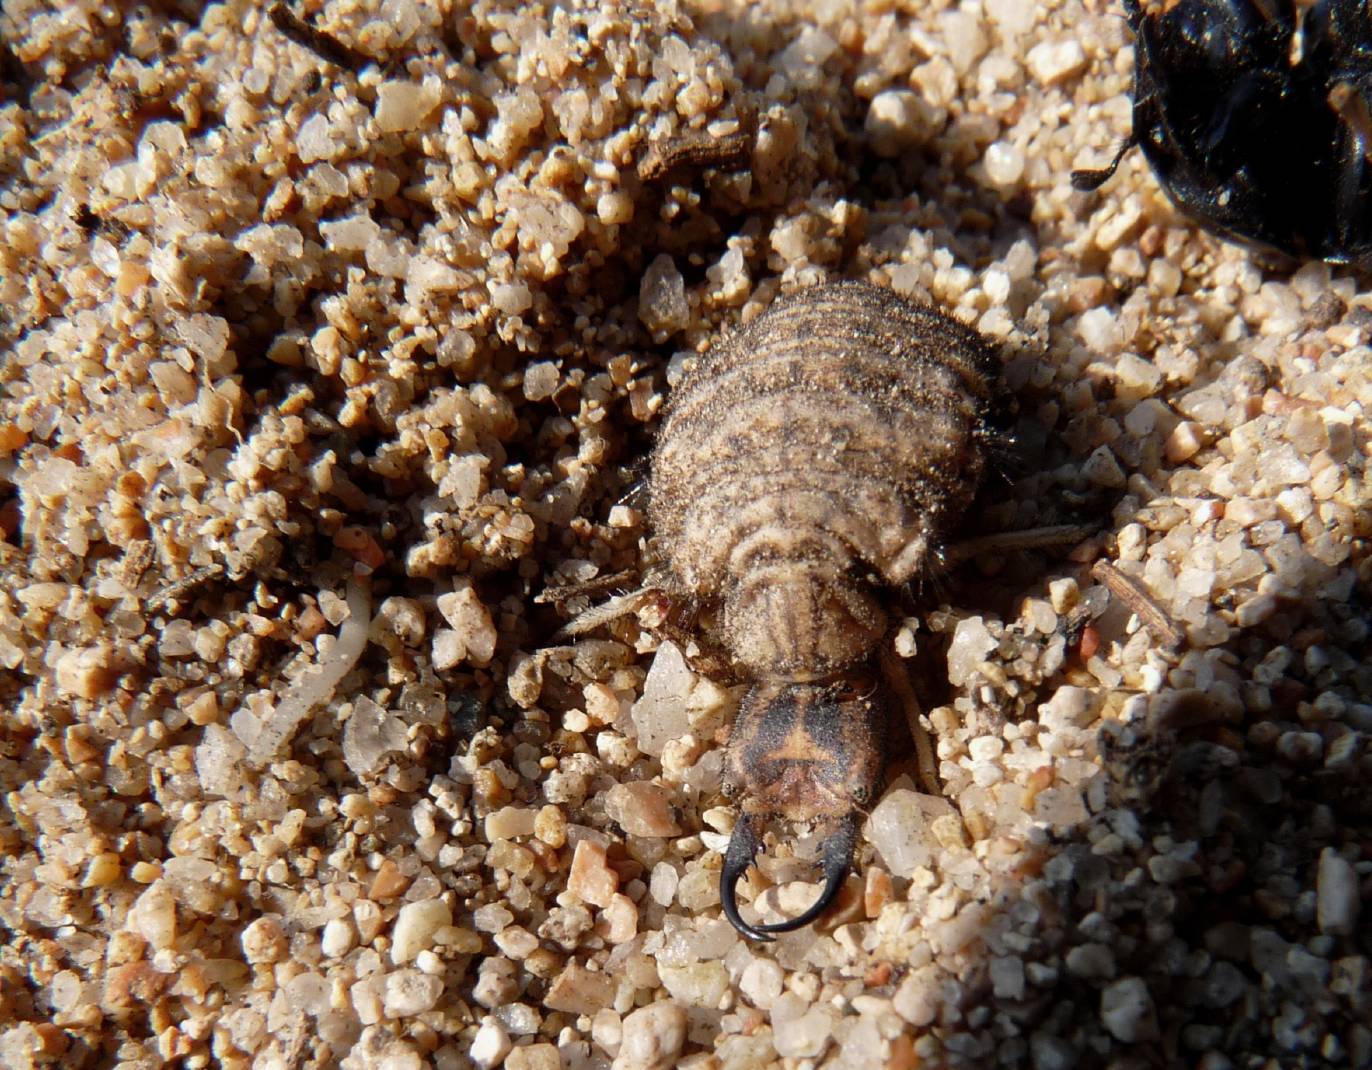 [Acanthaclisis occitanica larva] Tagliole nella sabbia